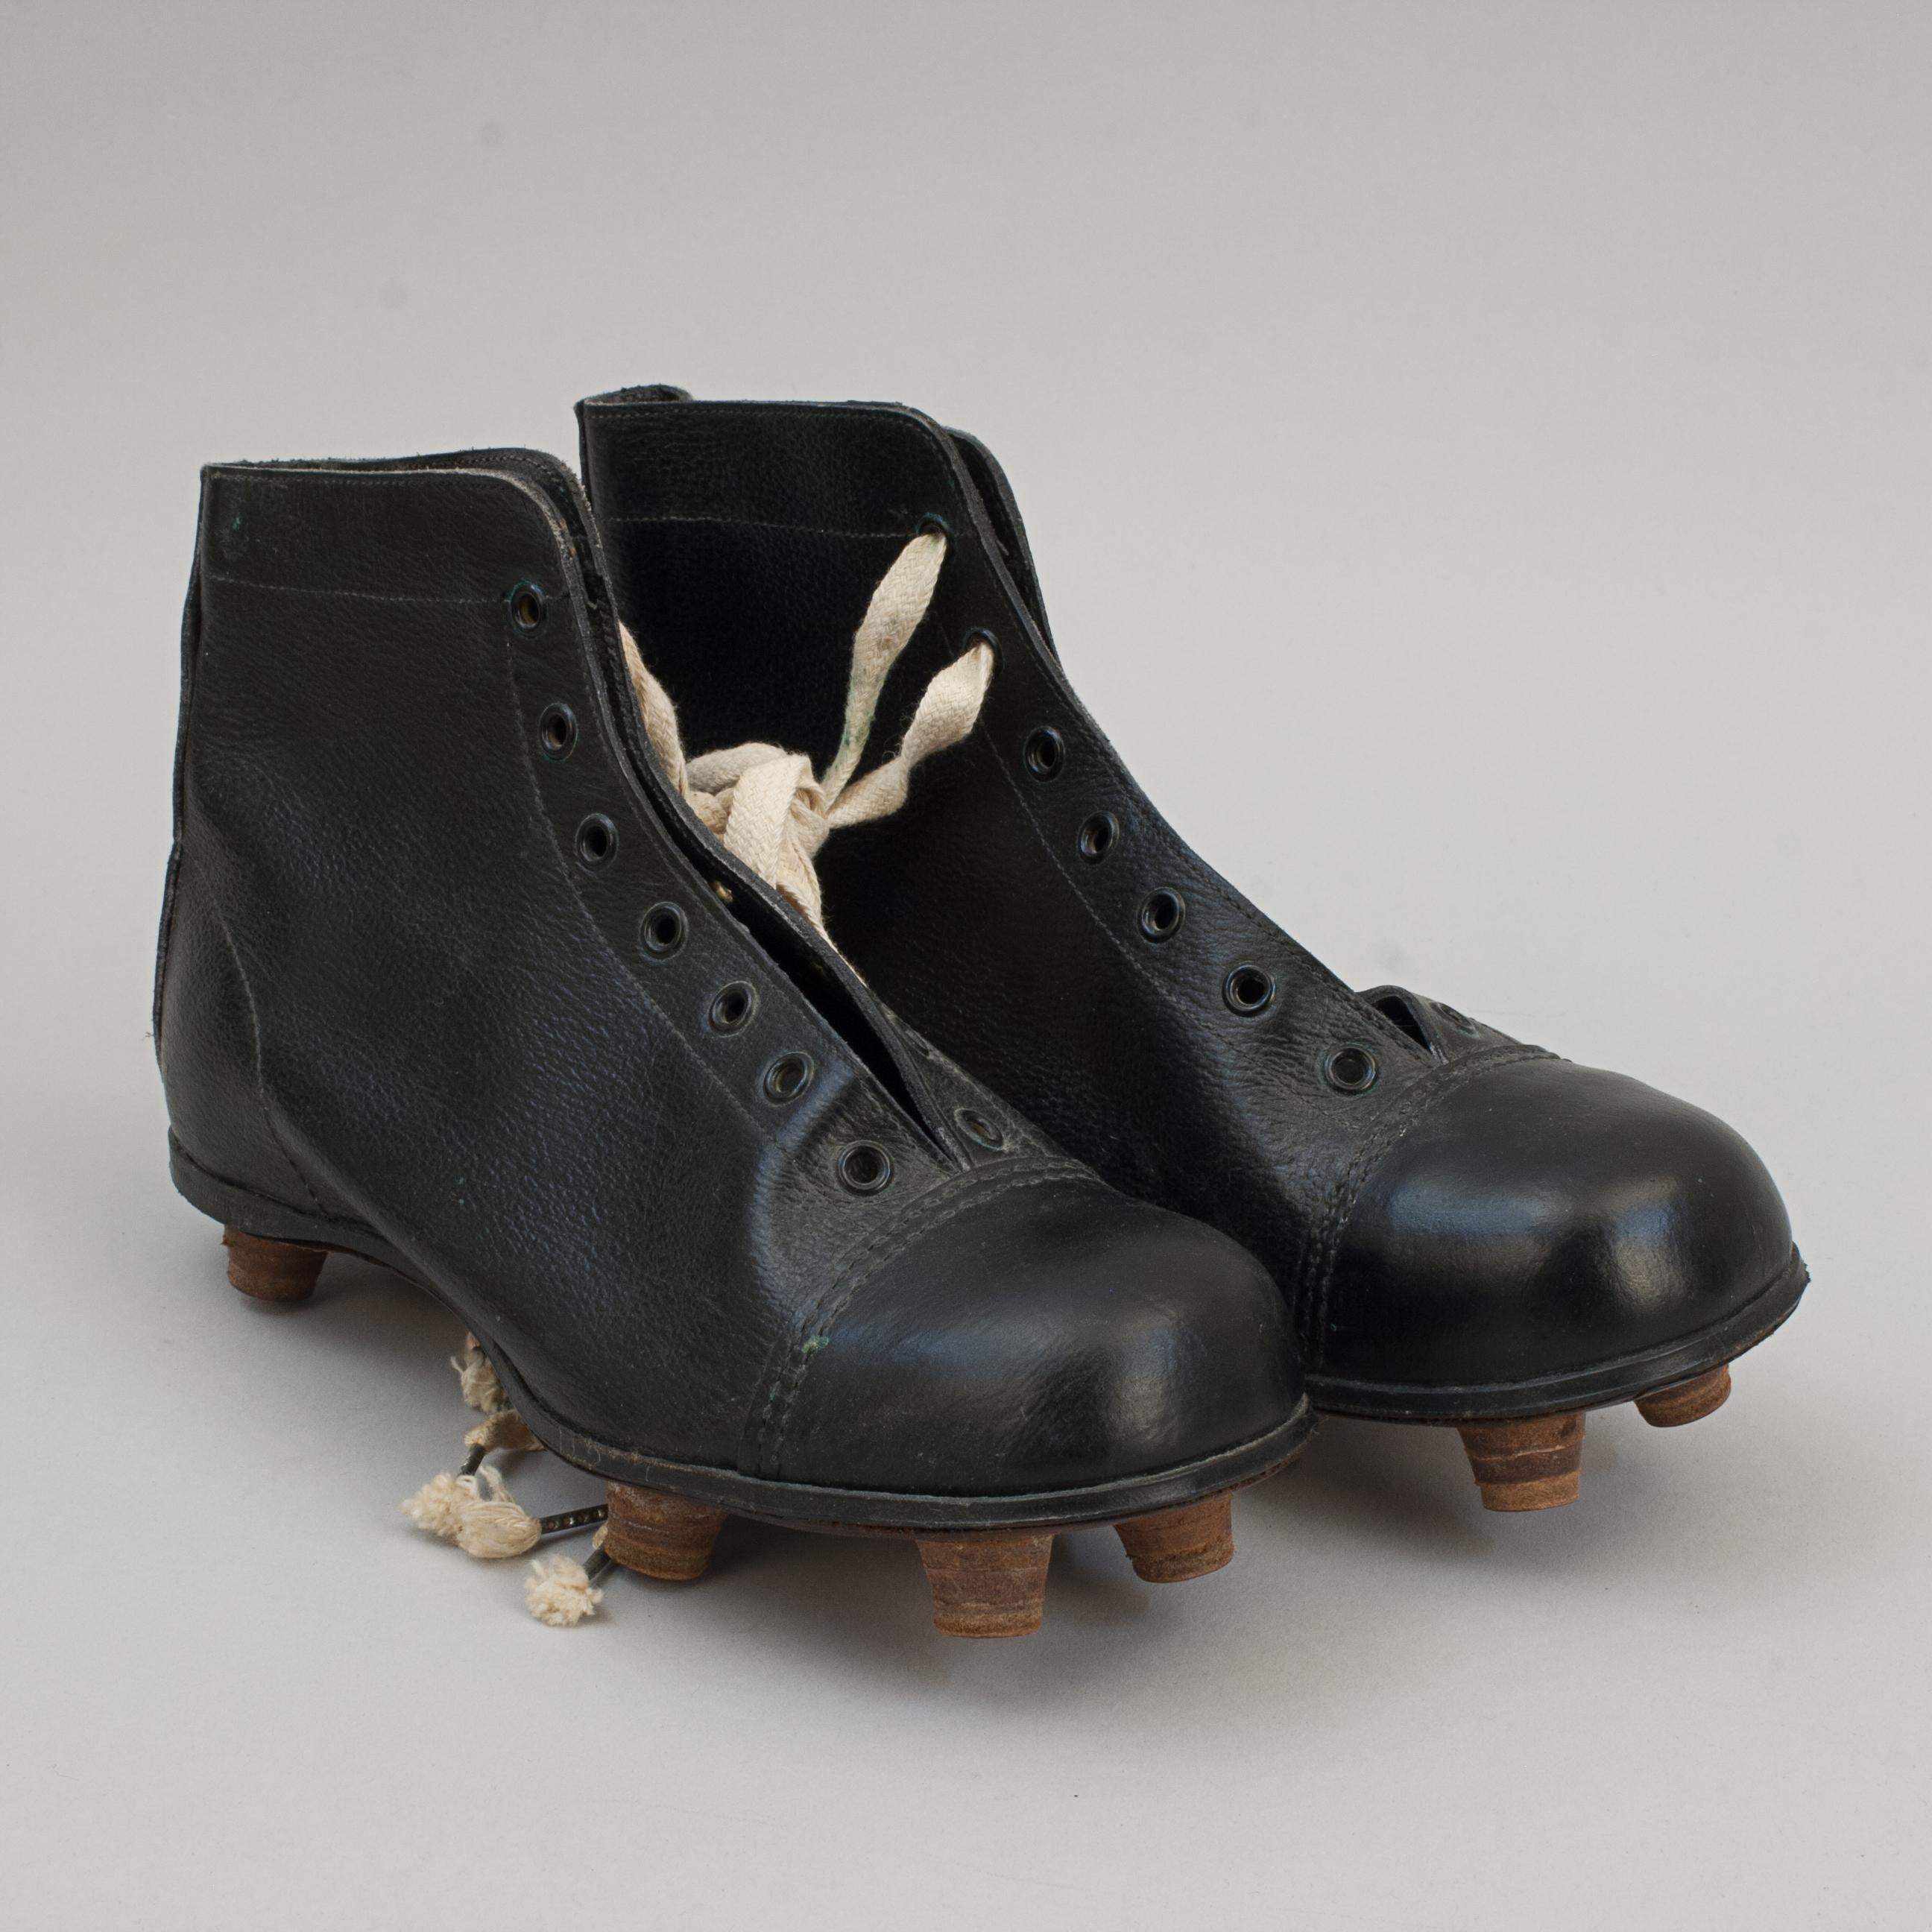 Vintage Black Leather Football Boots 6